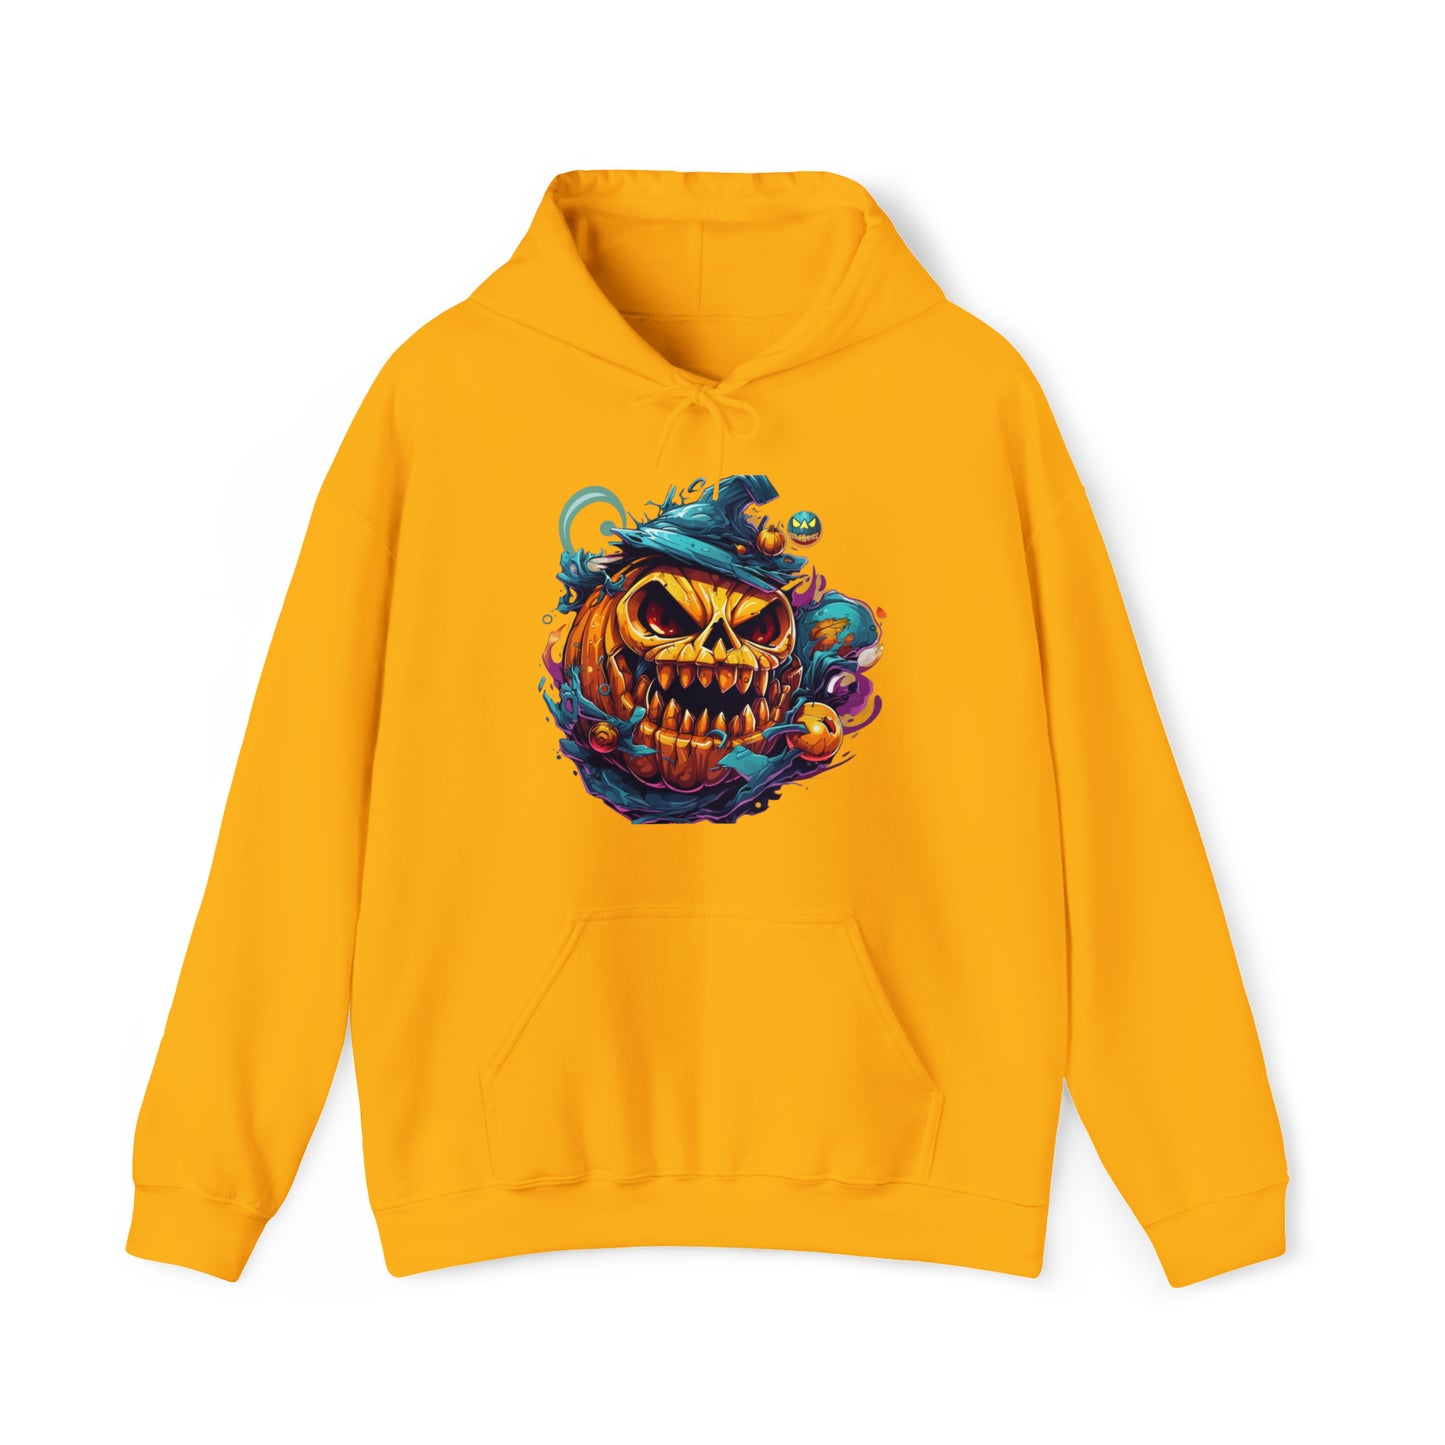 "Spooky Chic Hoodie" - Pullover Hooded Sweatshirts Long Sleeve